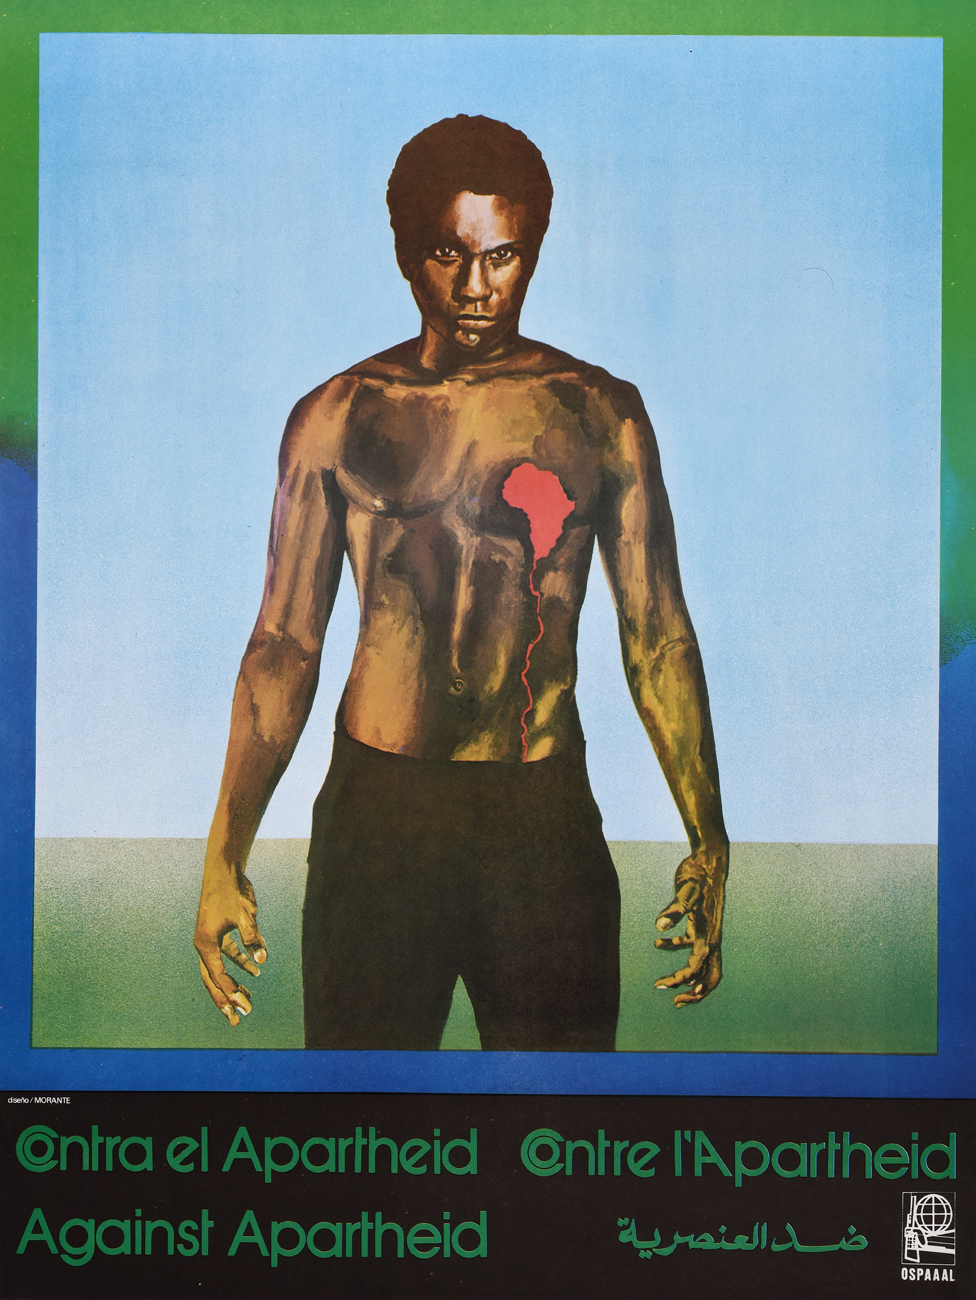 Плакат Ospaaal под названием «Южная Африка - против апартеида», 1982 г., на котором изображен человек с медвежьей грудью и кровоточащим сердцем в форме Африки